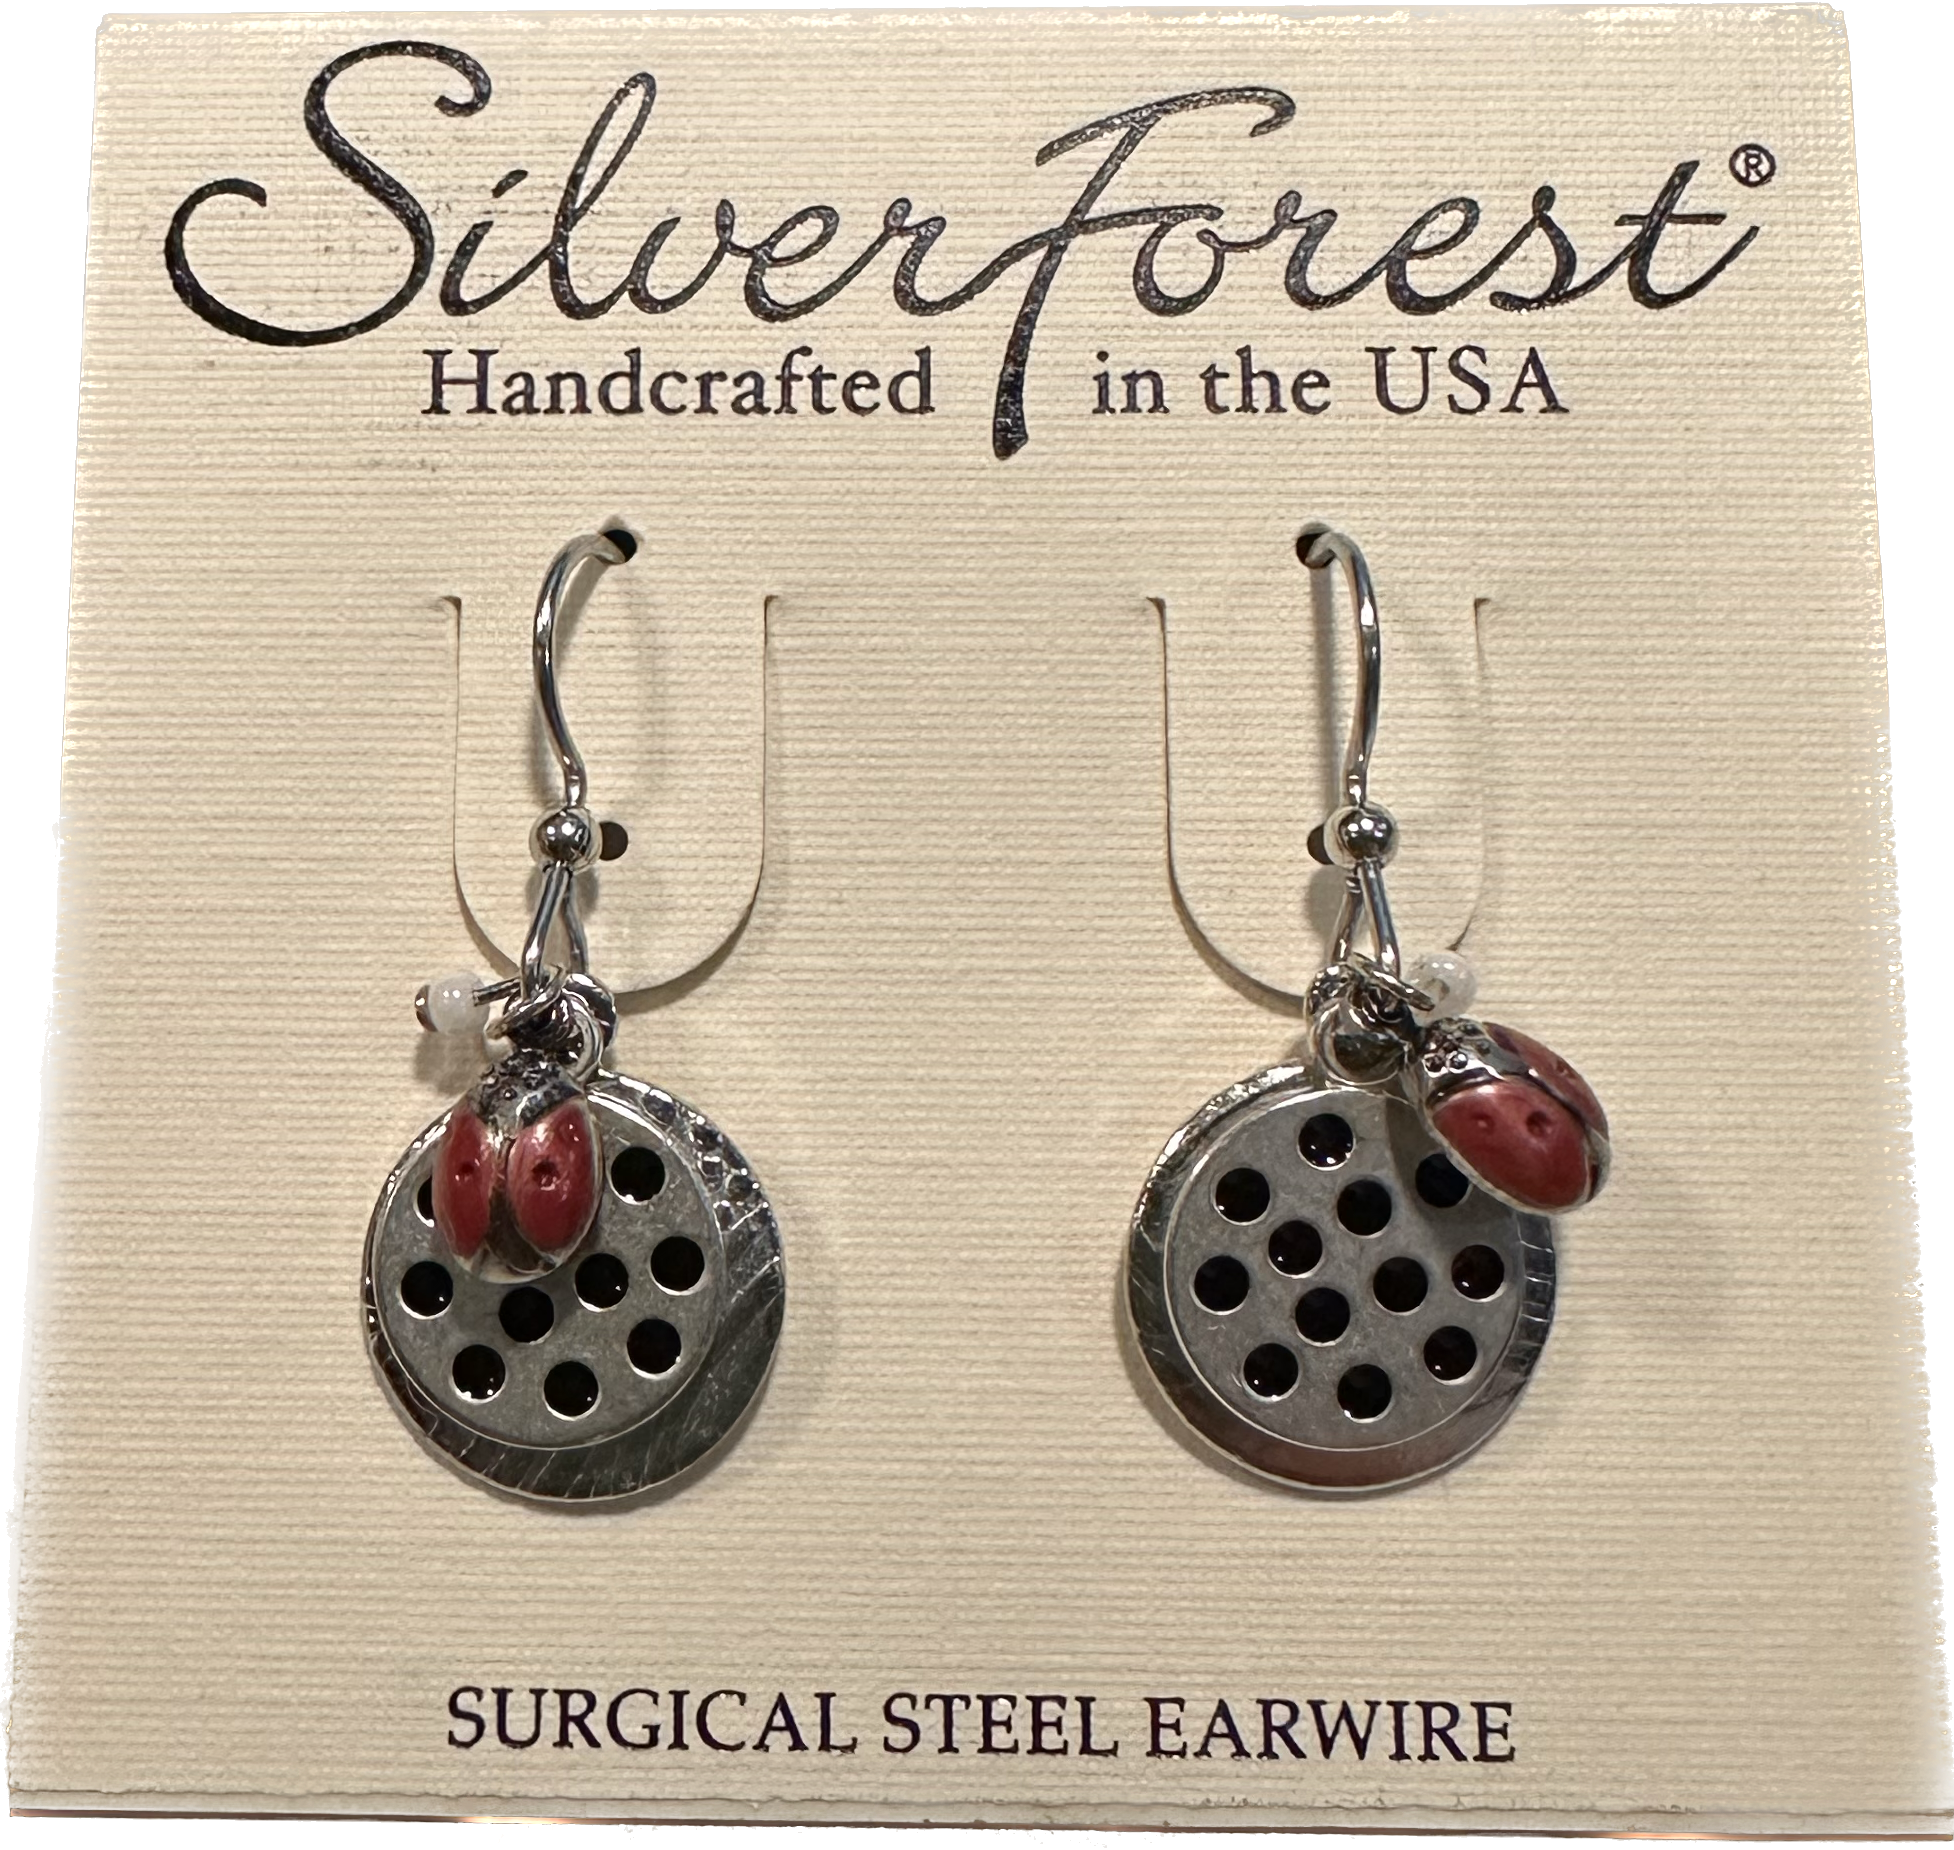 Silver Forest Earrings NE-1812